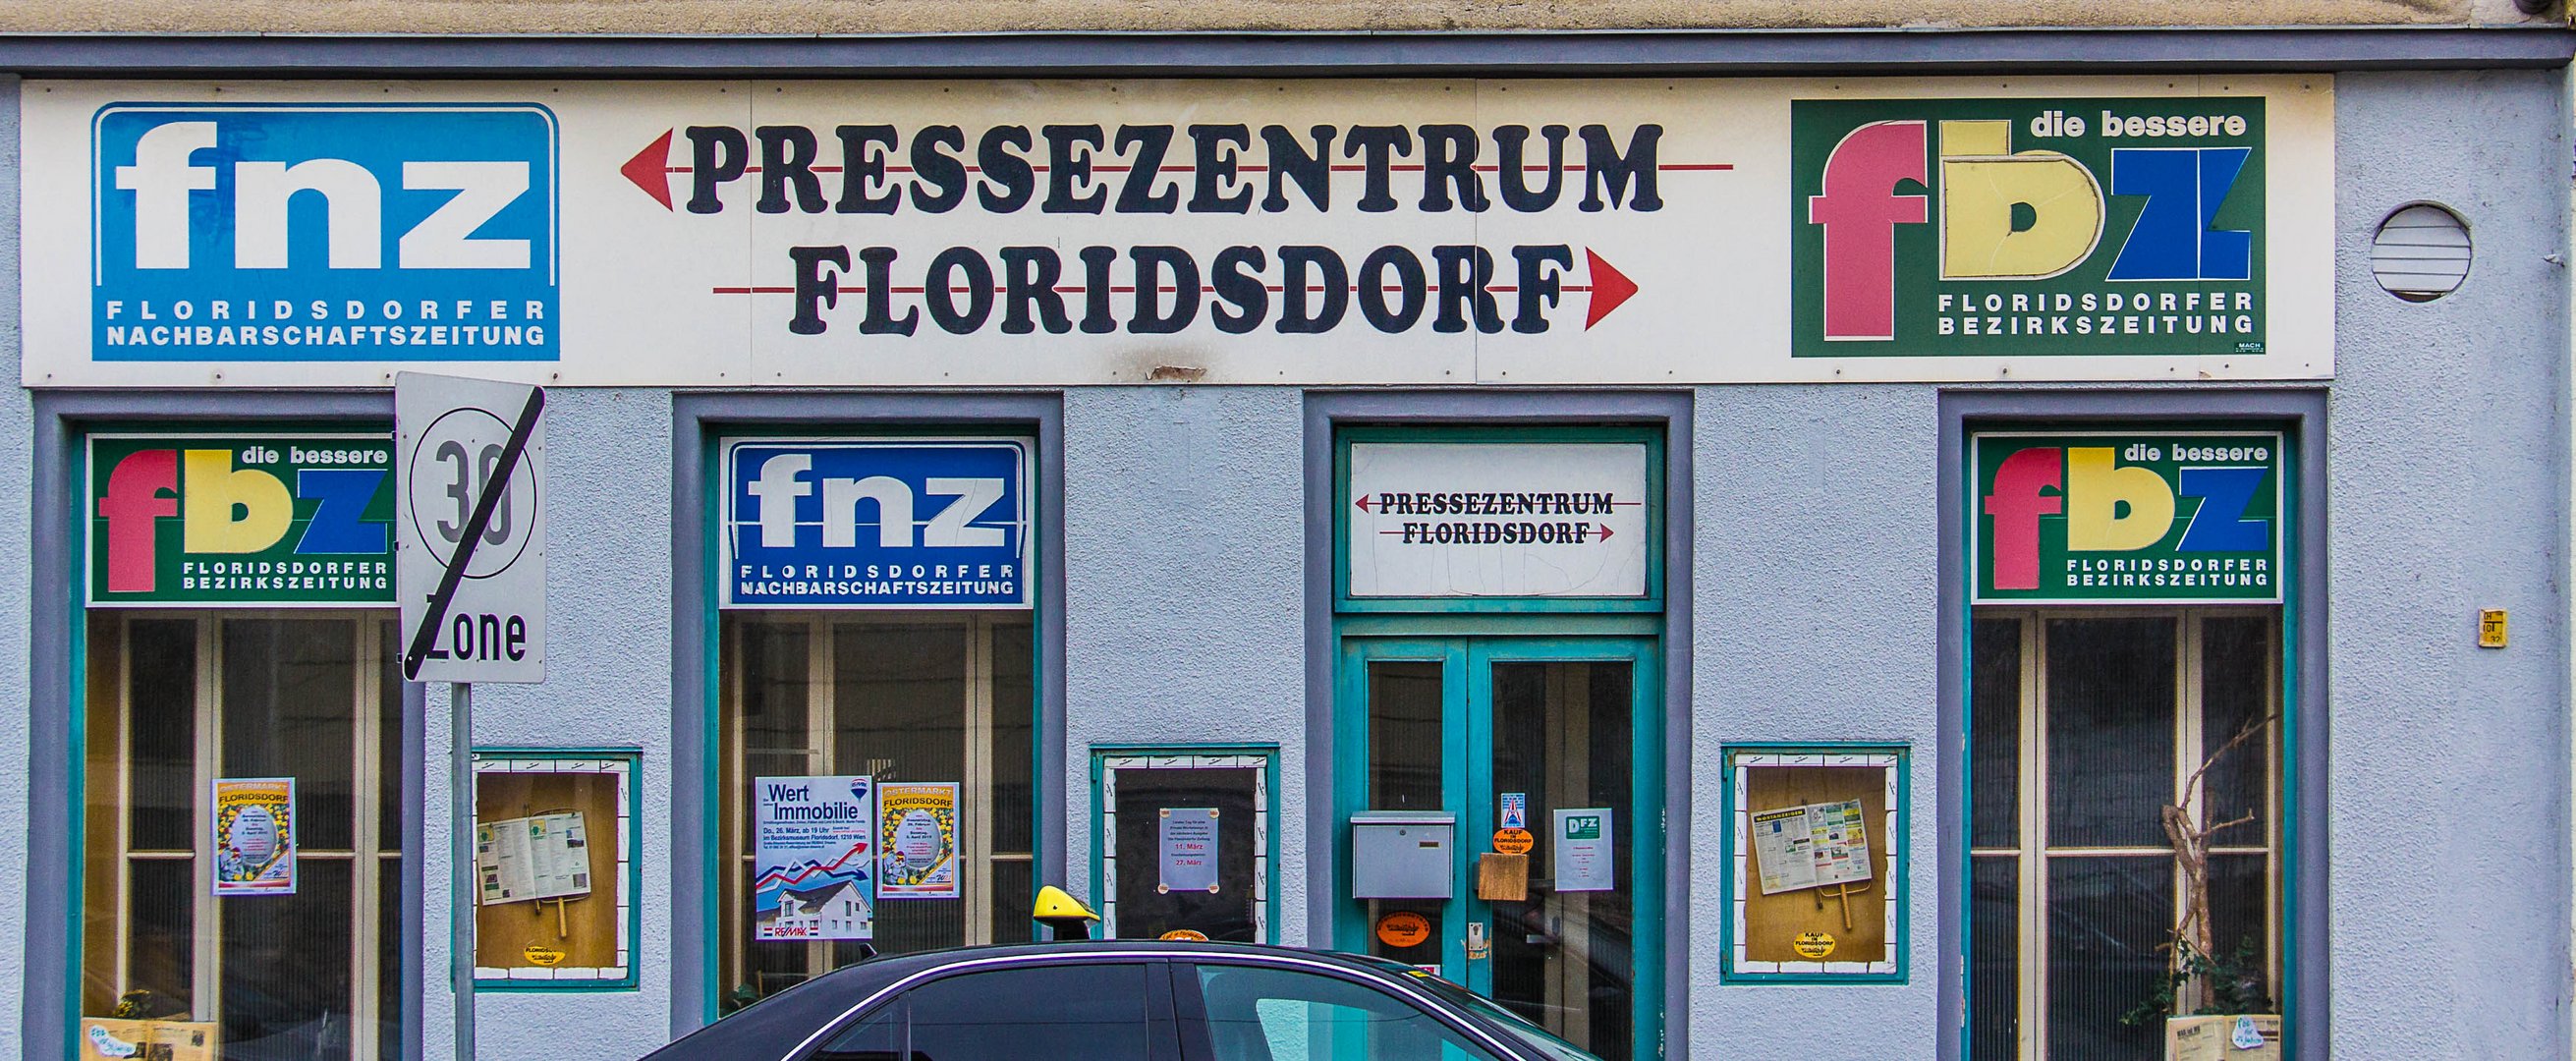 Pressezentrum Floridsdorf